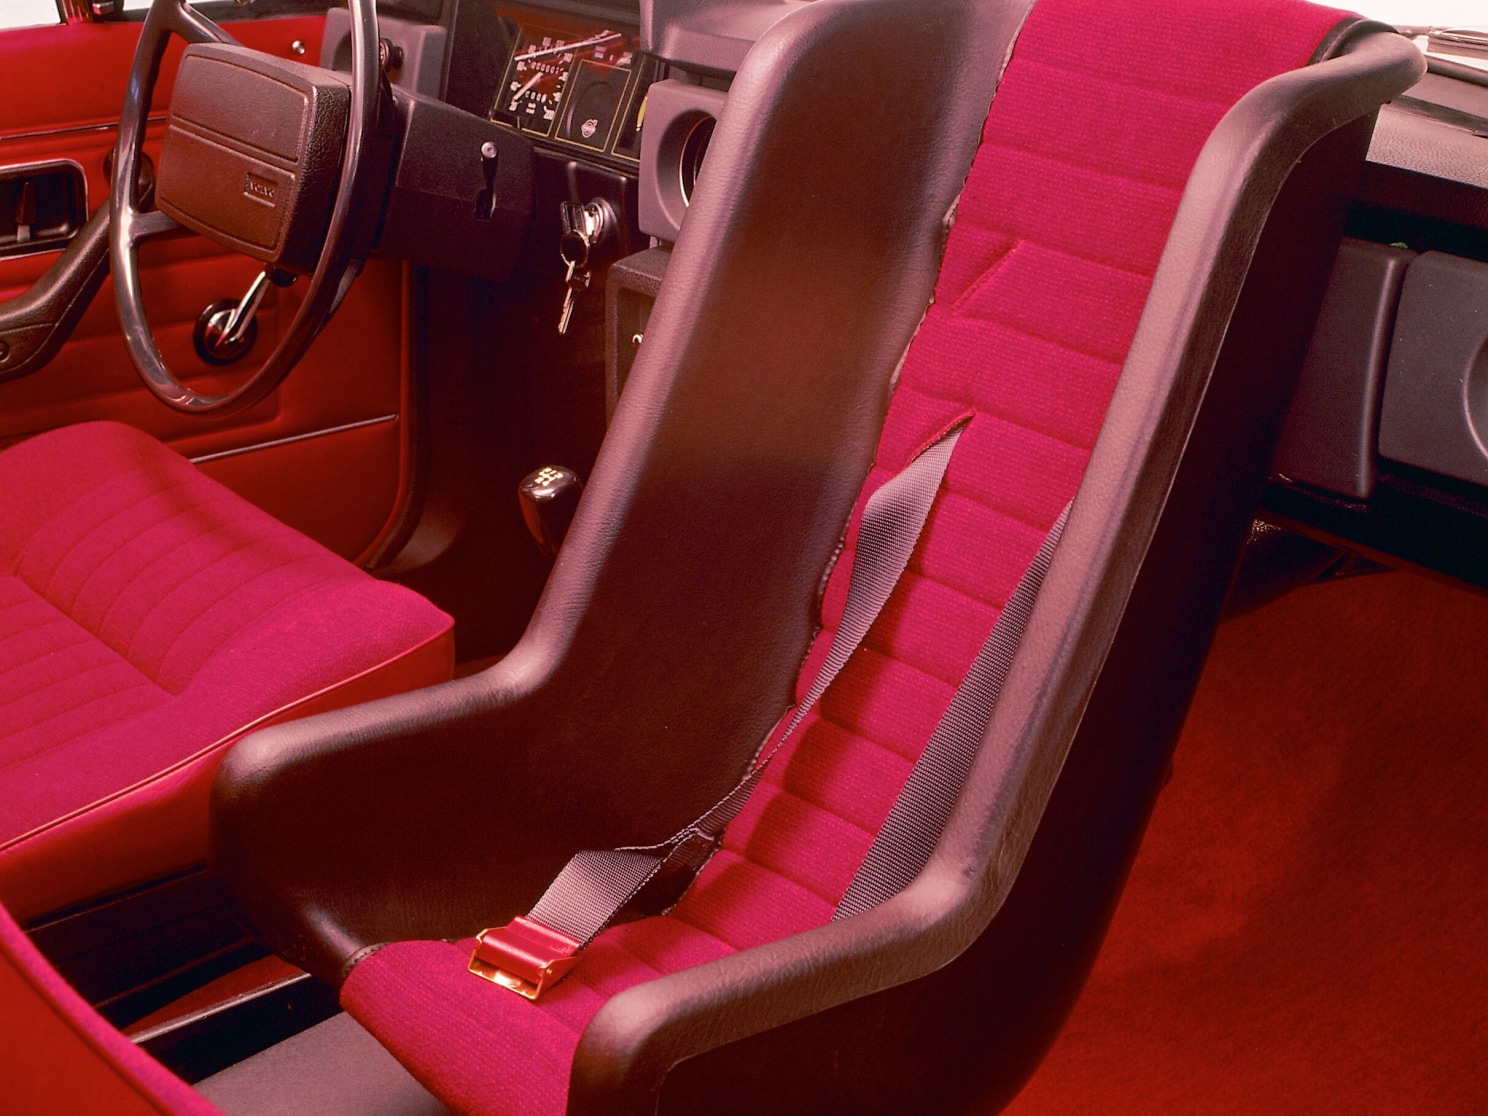 Dječja sjedalica okrenuta unatrag iz Volvo Cars u 1972.